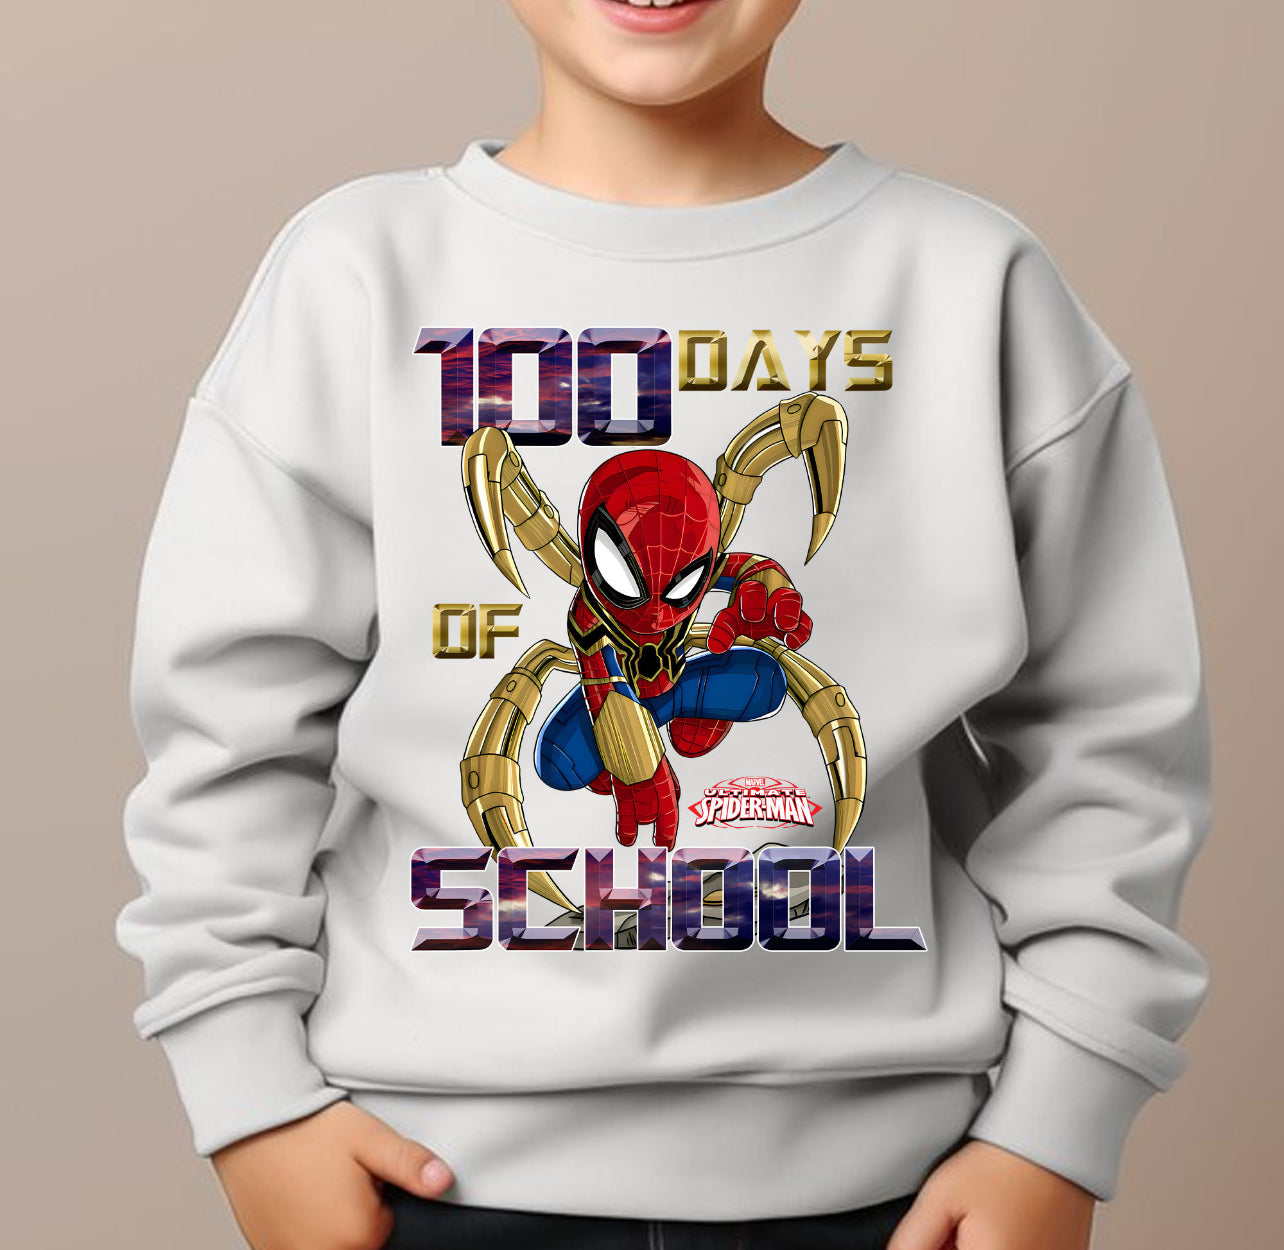 Spider 100 days of school sweatshirt